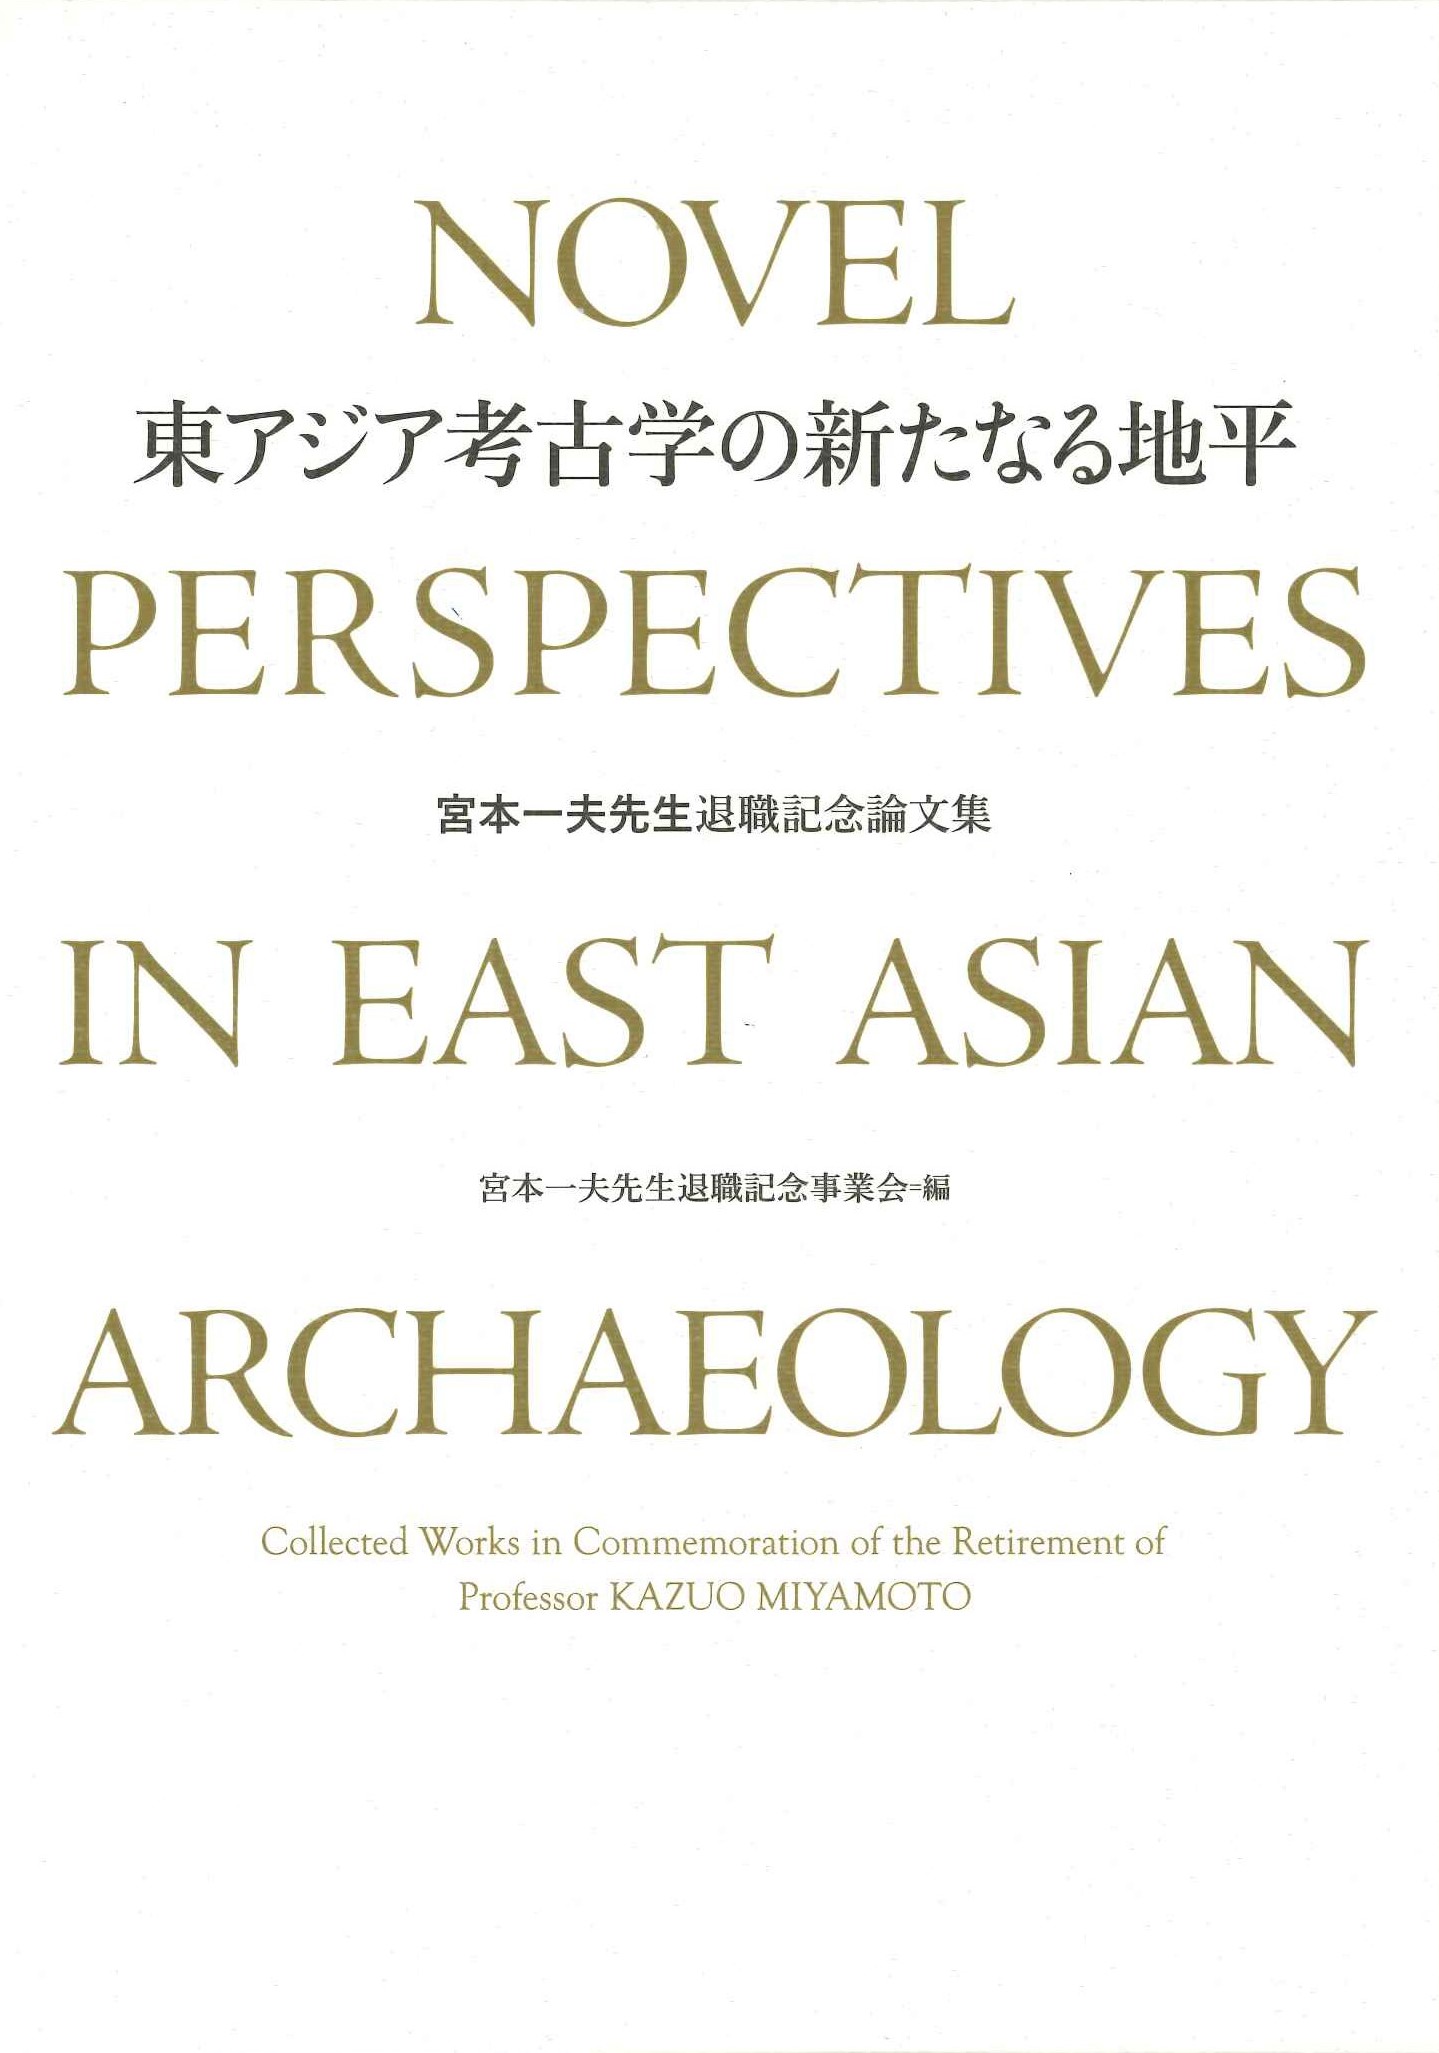  東アジア考古学の新たなる地平 宮本一夫先生退職記念論文集(上下)